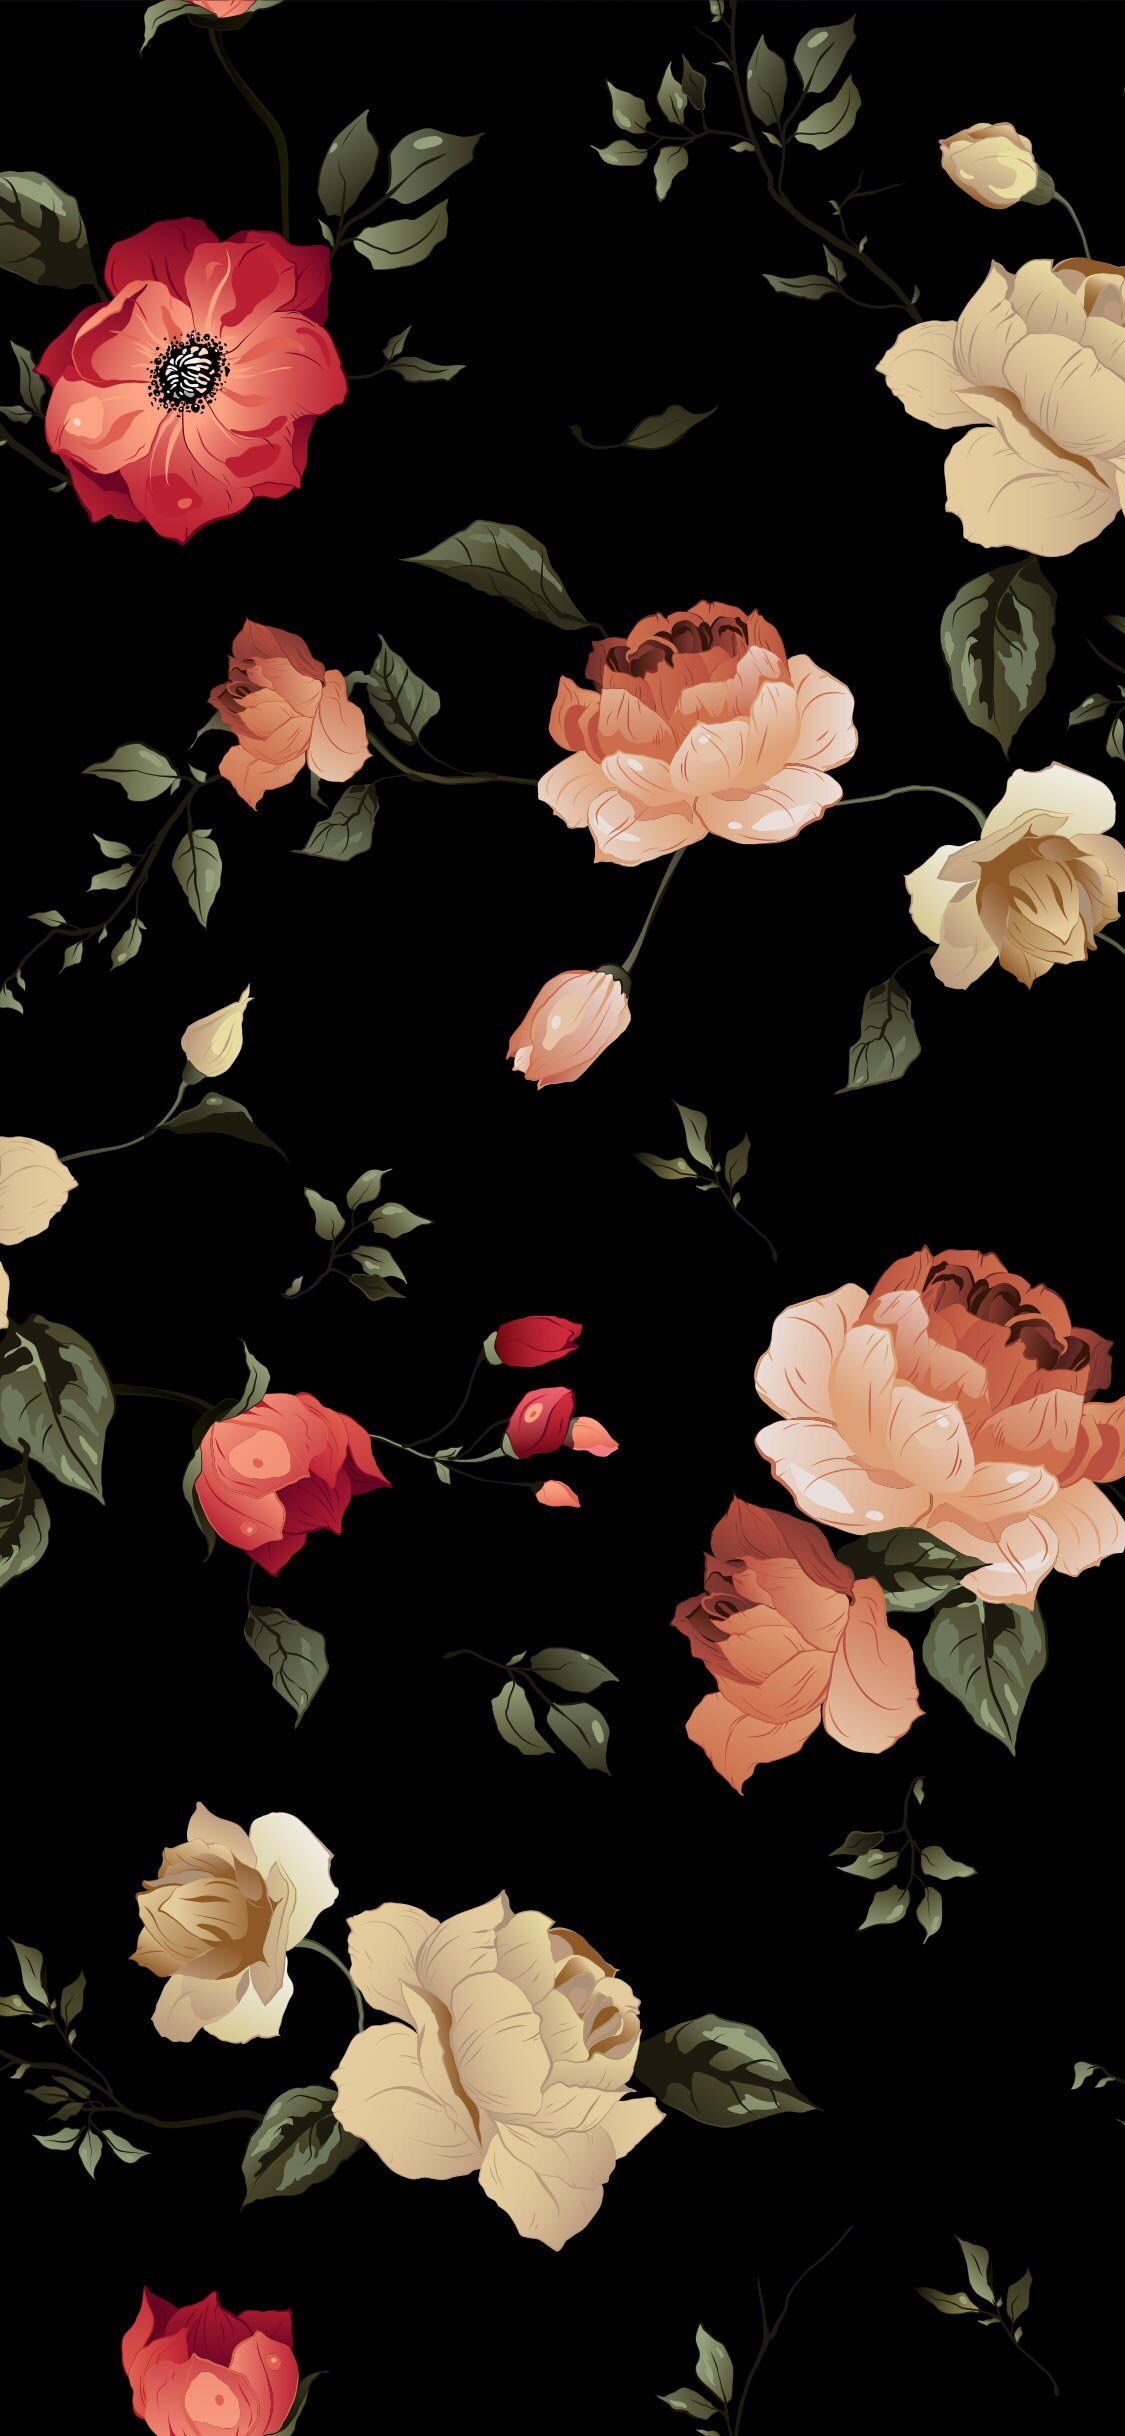 HD wallpaper. Floral wallpaper iphone, Flower wallpaper, Floral wallpaper